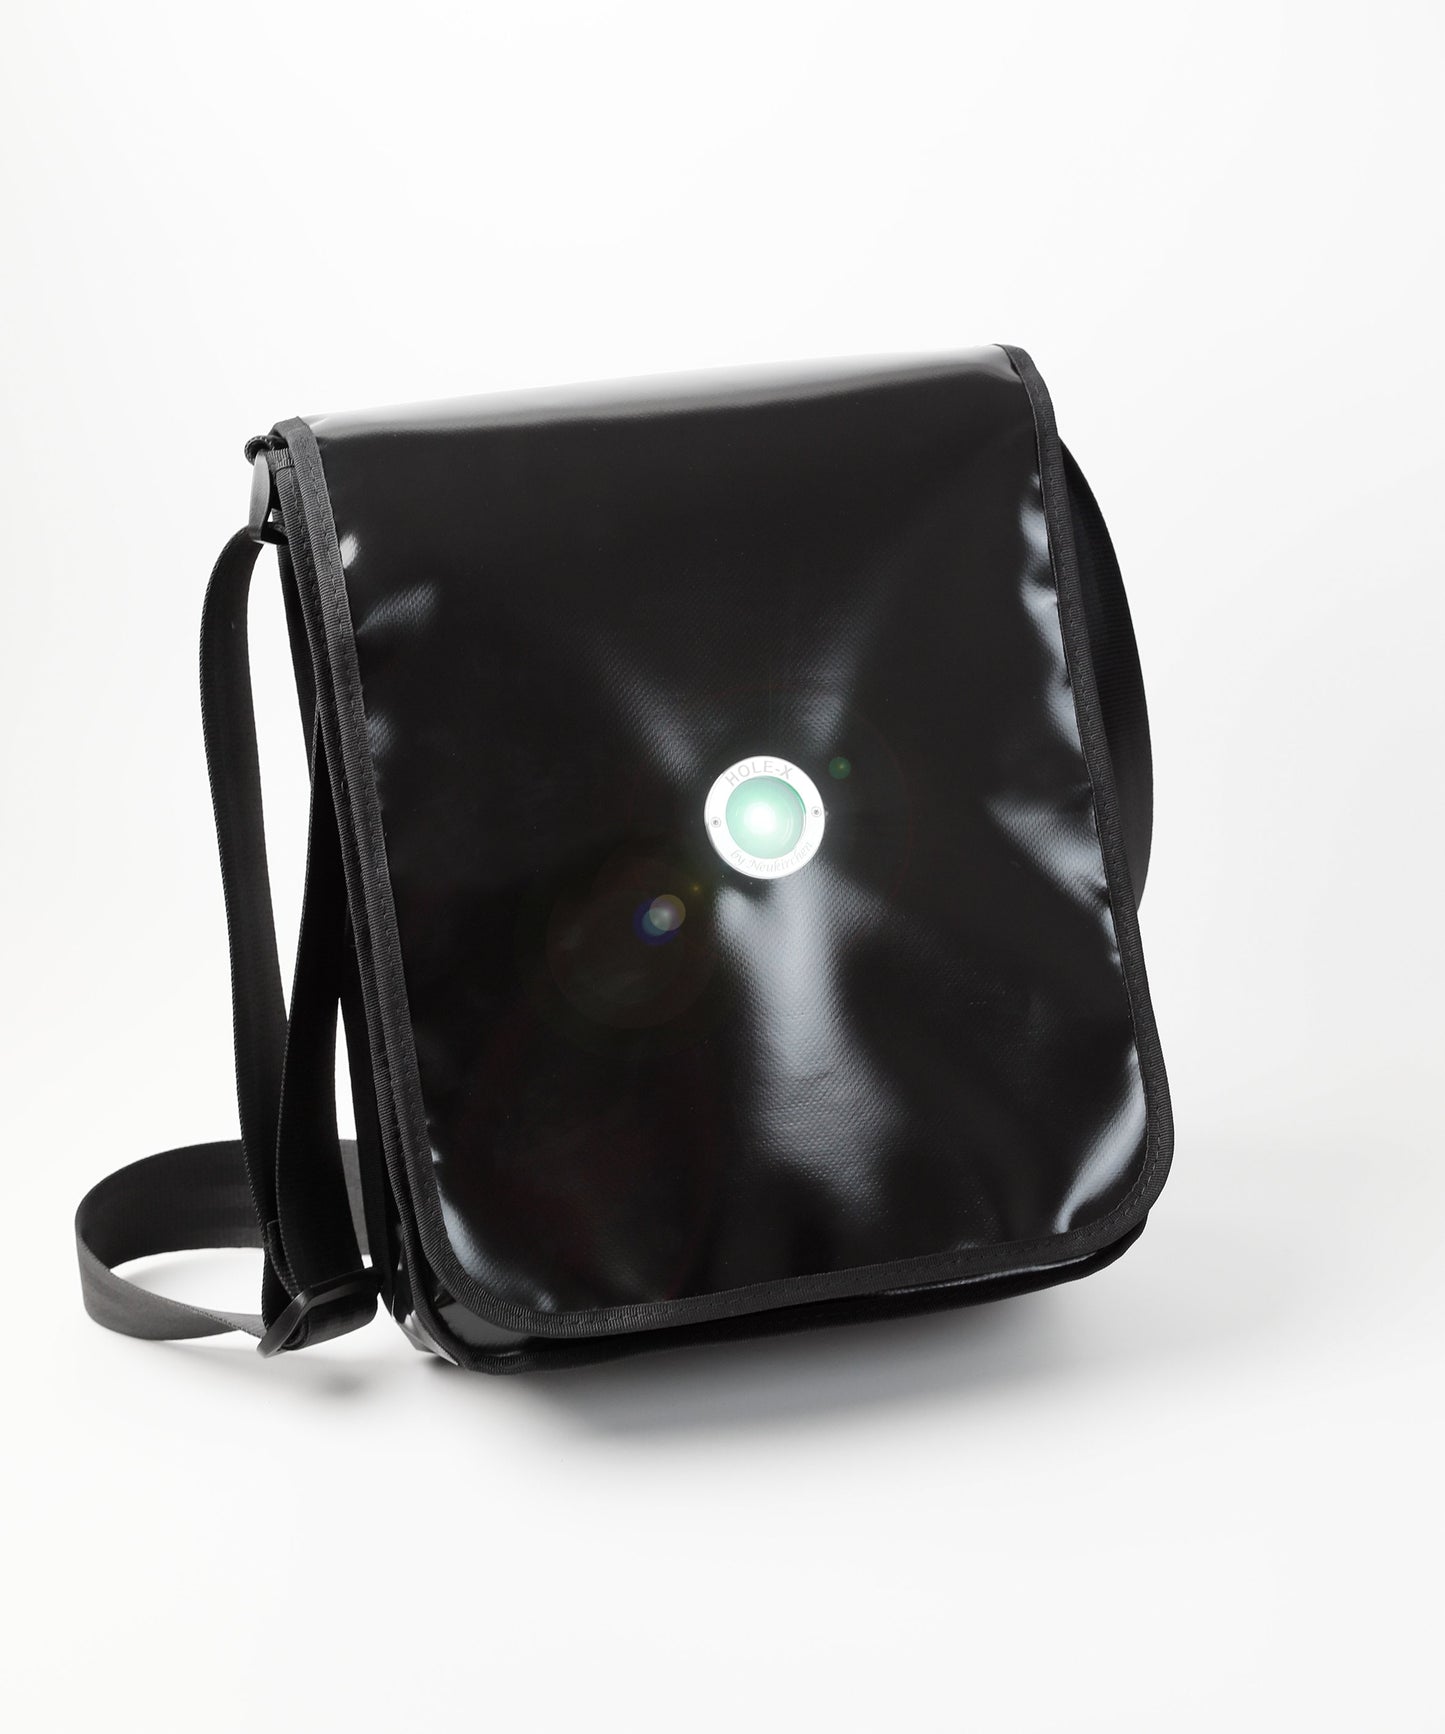 HOLE-X FOXTROTT Tasche Lkw-Plane schwarz Bringe Deine Tasche zum Leuchten mit Deinem Smartphone